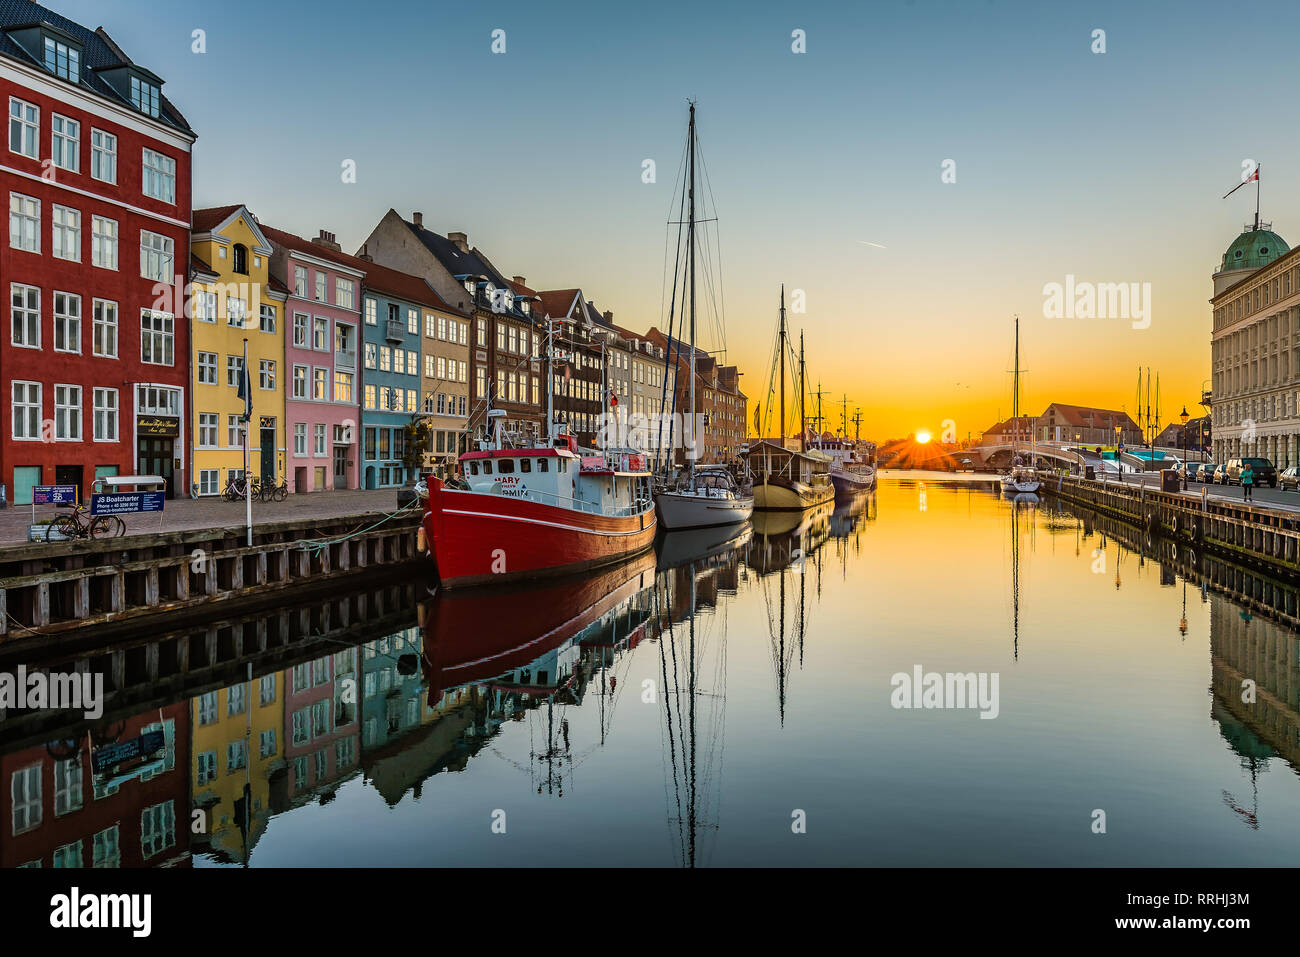 Das ruhige Wasser der Hafen von Kopenhagen Nyhavn am frühen Morgen bei Sonnenaufgang, Kopenhagen, 16. Februar 2019 Stockfoto